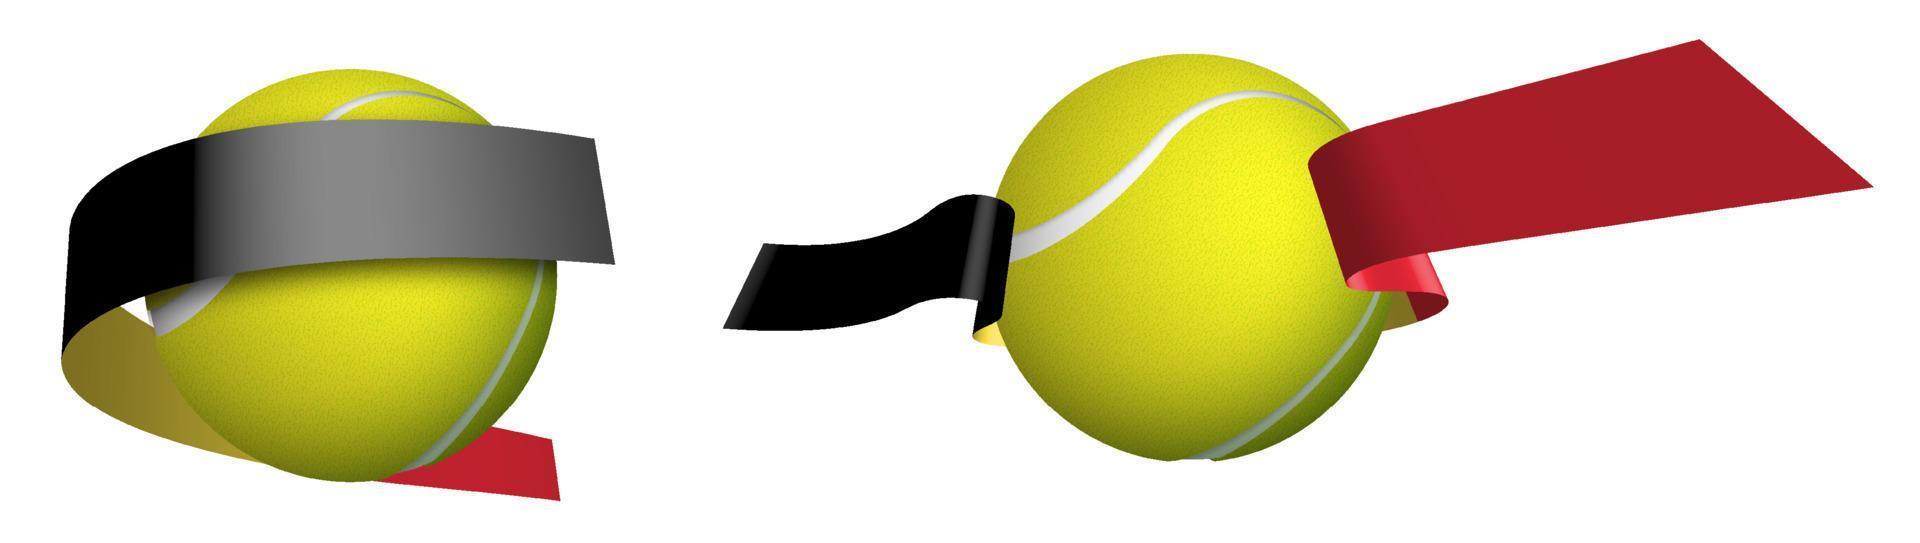 des sports tennis Balle dans rubans avec couleurs de drapeau de Belgique. isolé vecteur sur blanc Contexte